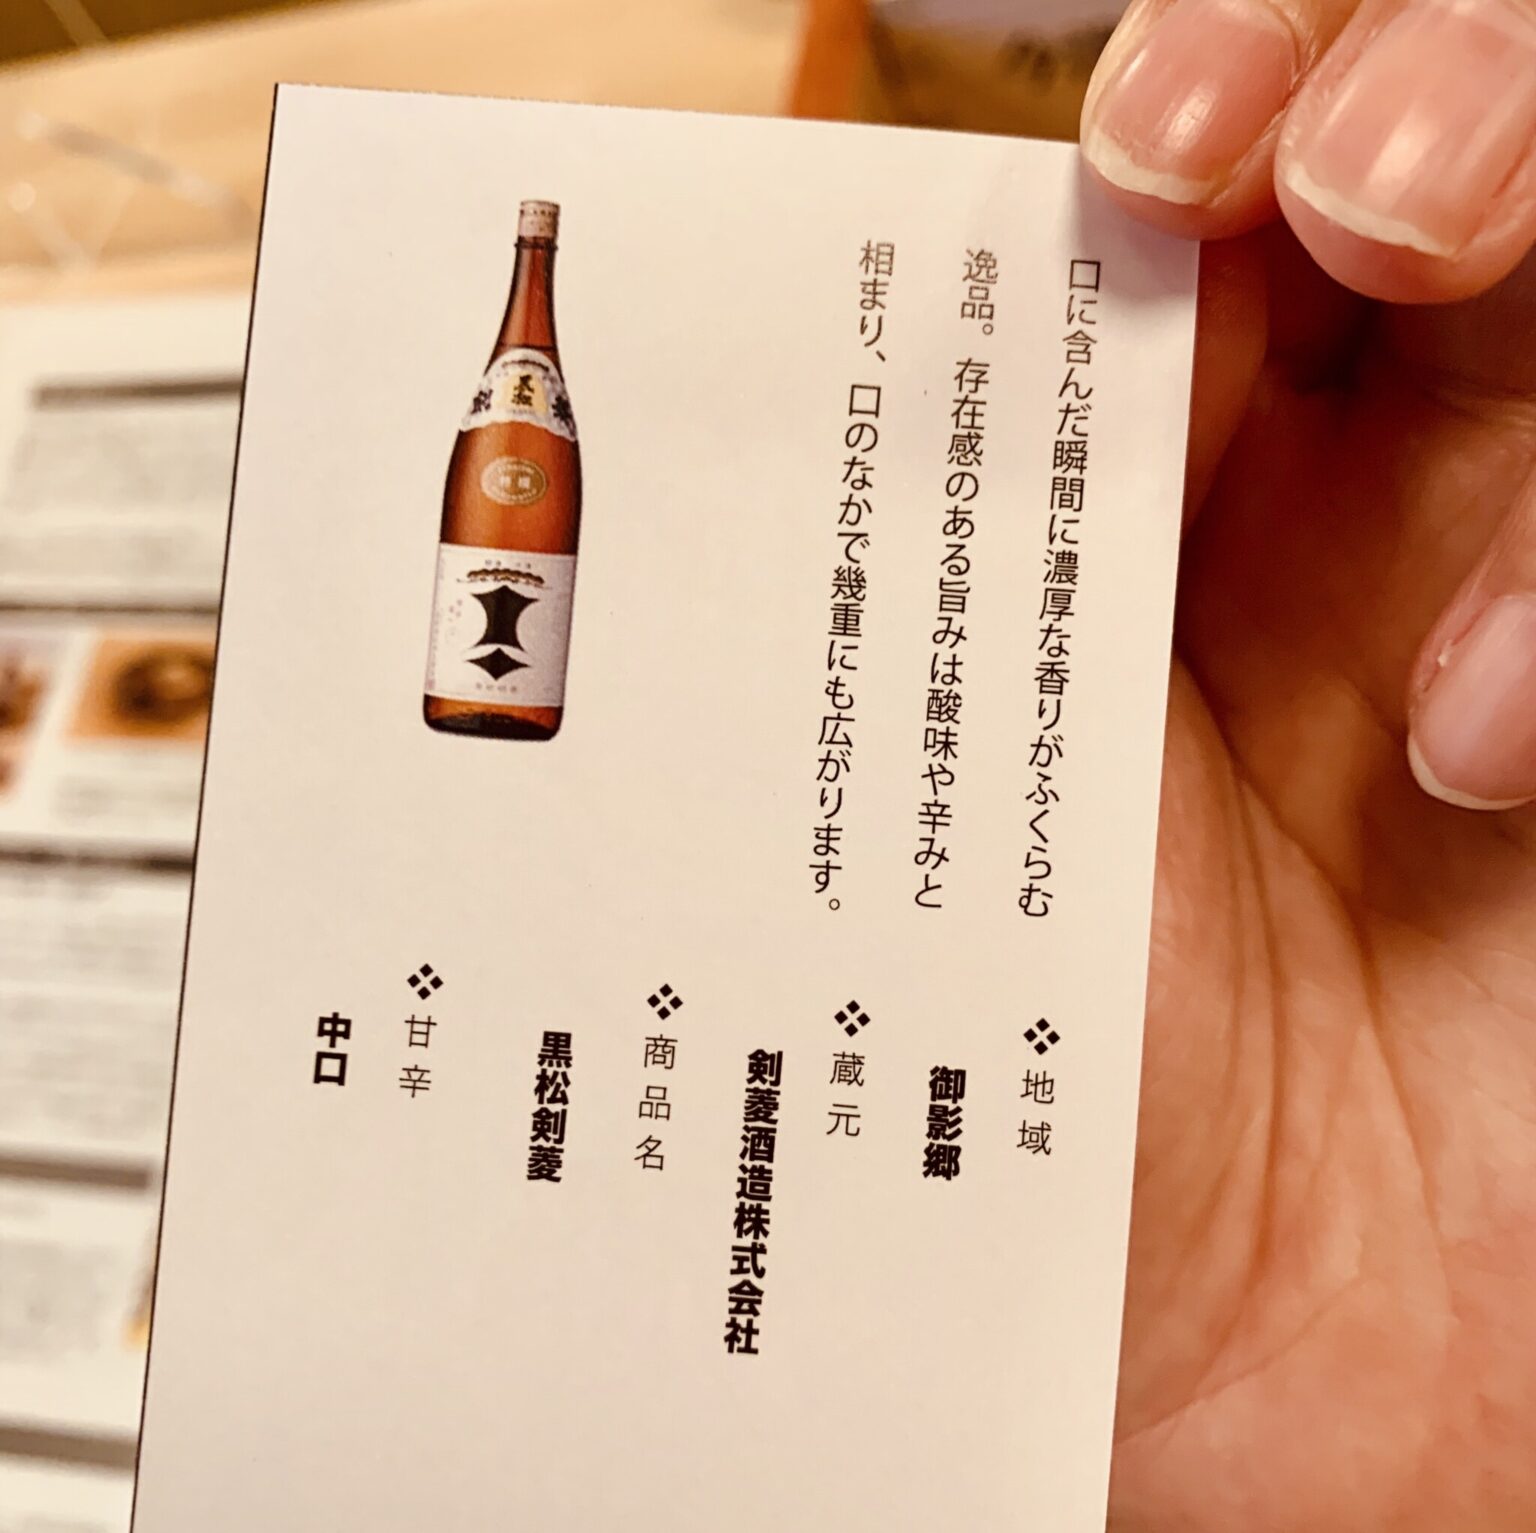 味わいの特徴を記したカードがついているので、日本酒初心者でも違いを確かめながら酔うことができる！